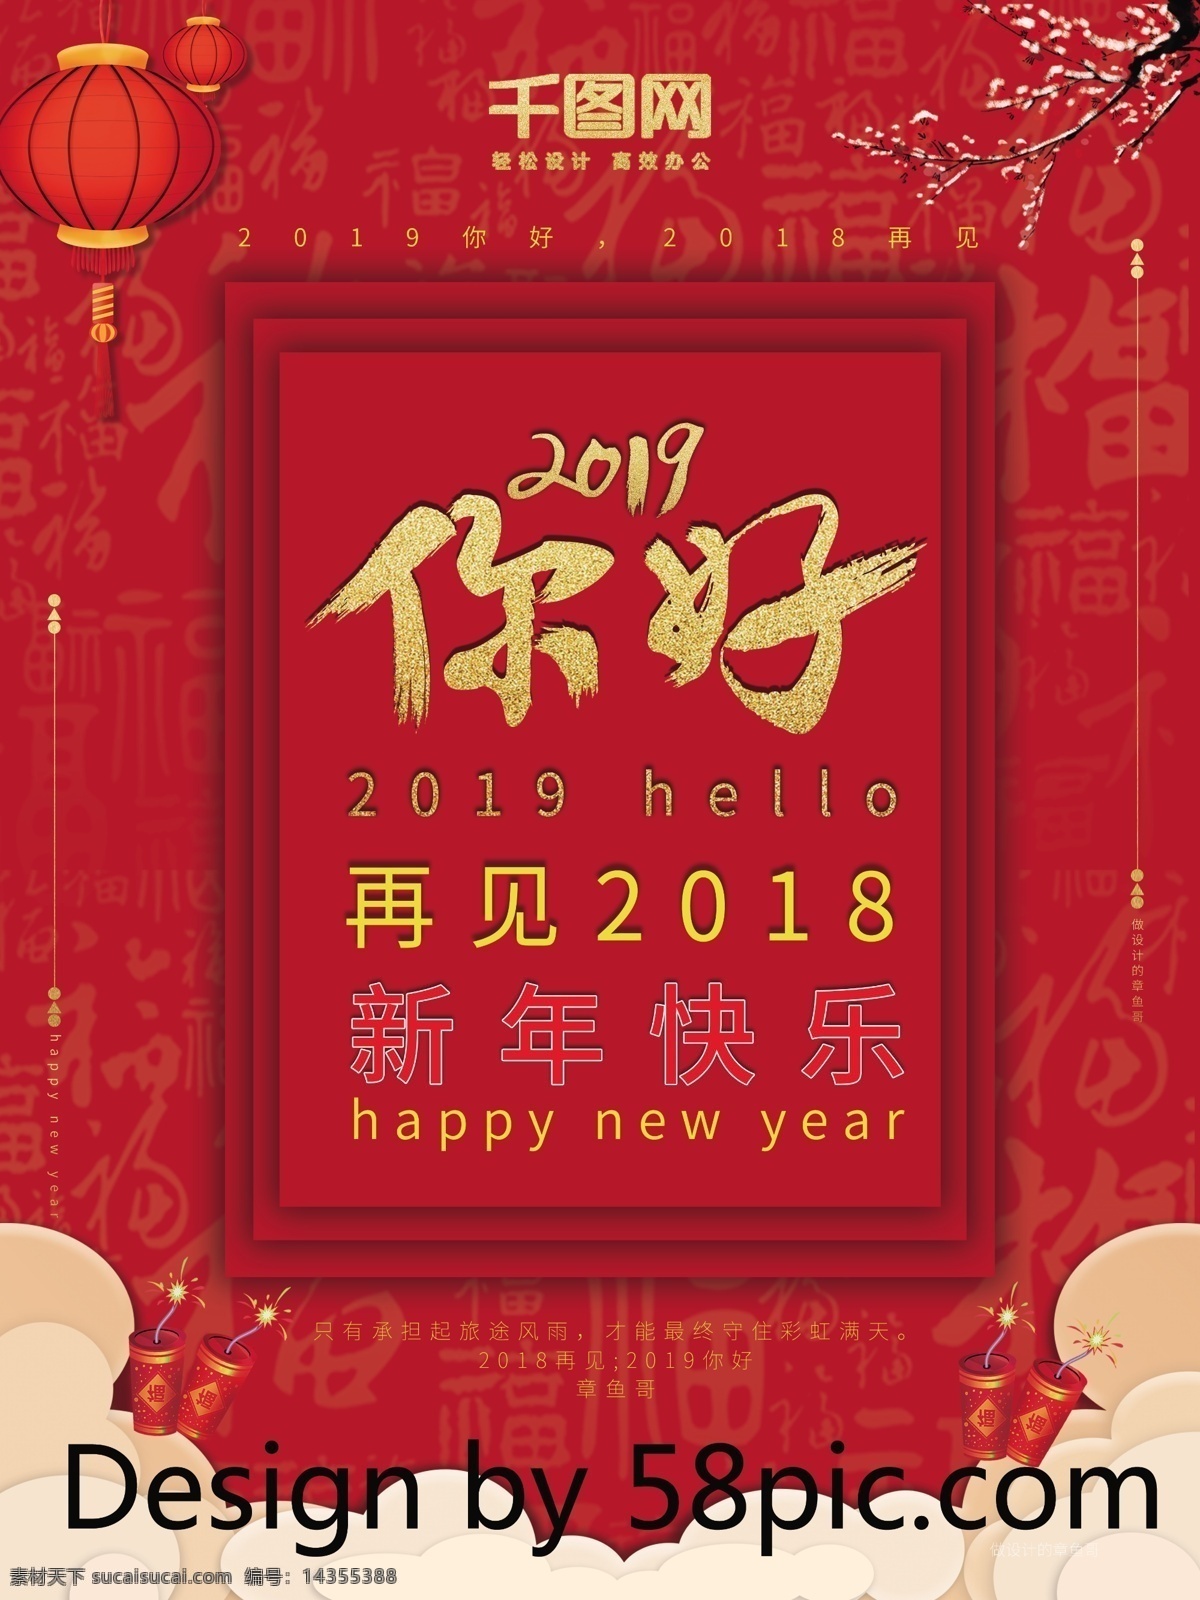 新春 喜庆 你好 2019 红色 大 海报 灯笼 云 福字 新年快乐 节日节气 新年 手绘 鞭炮